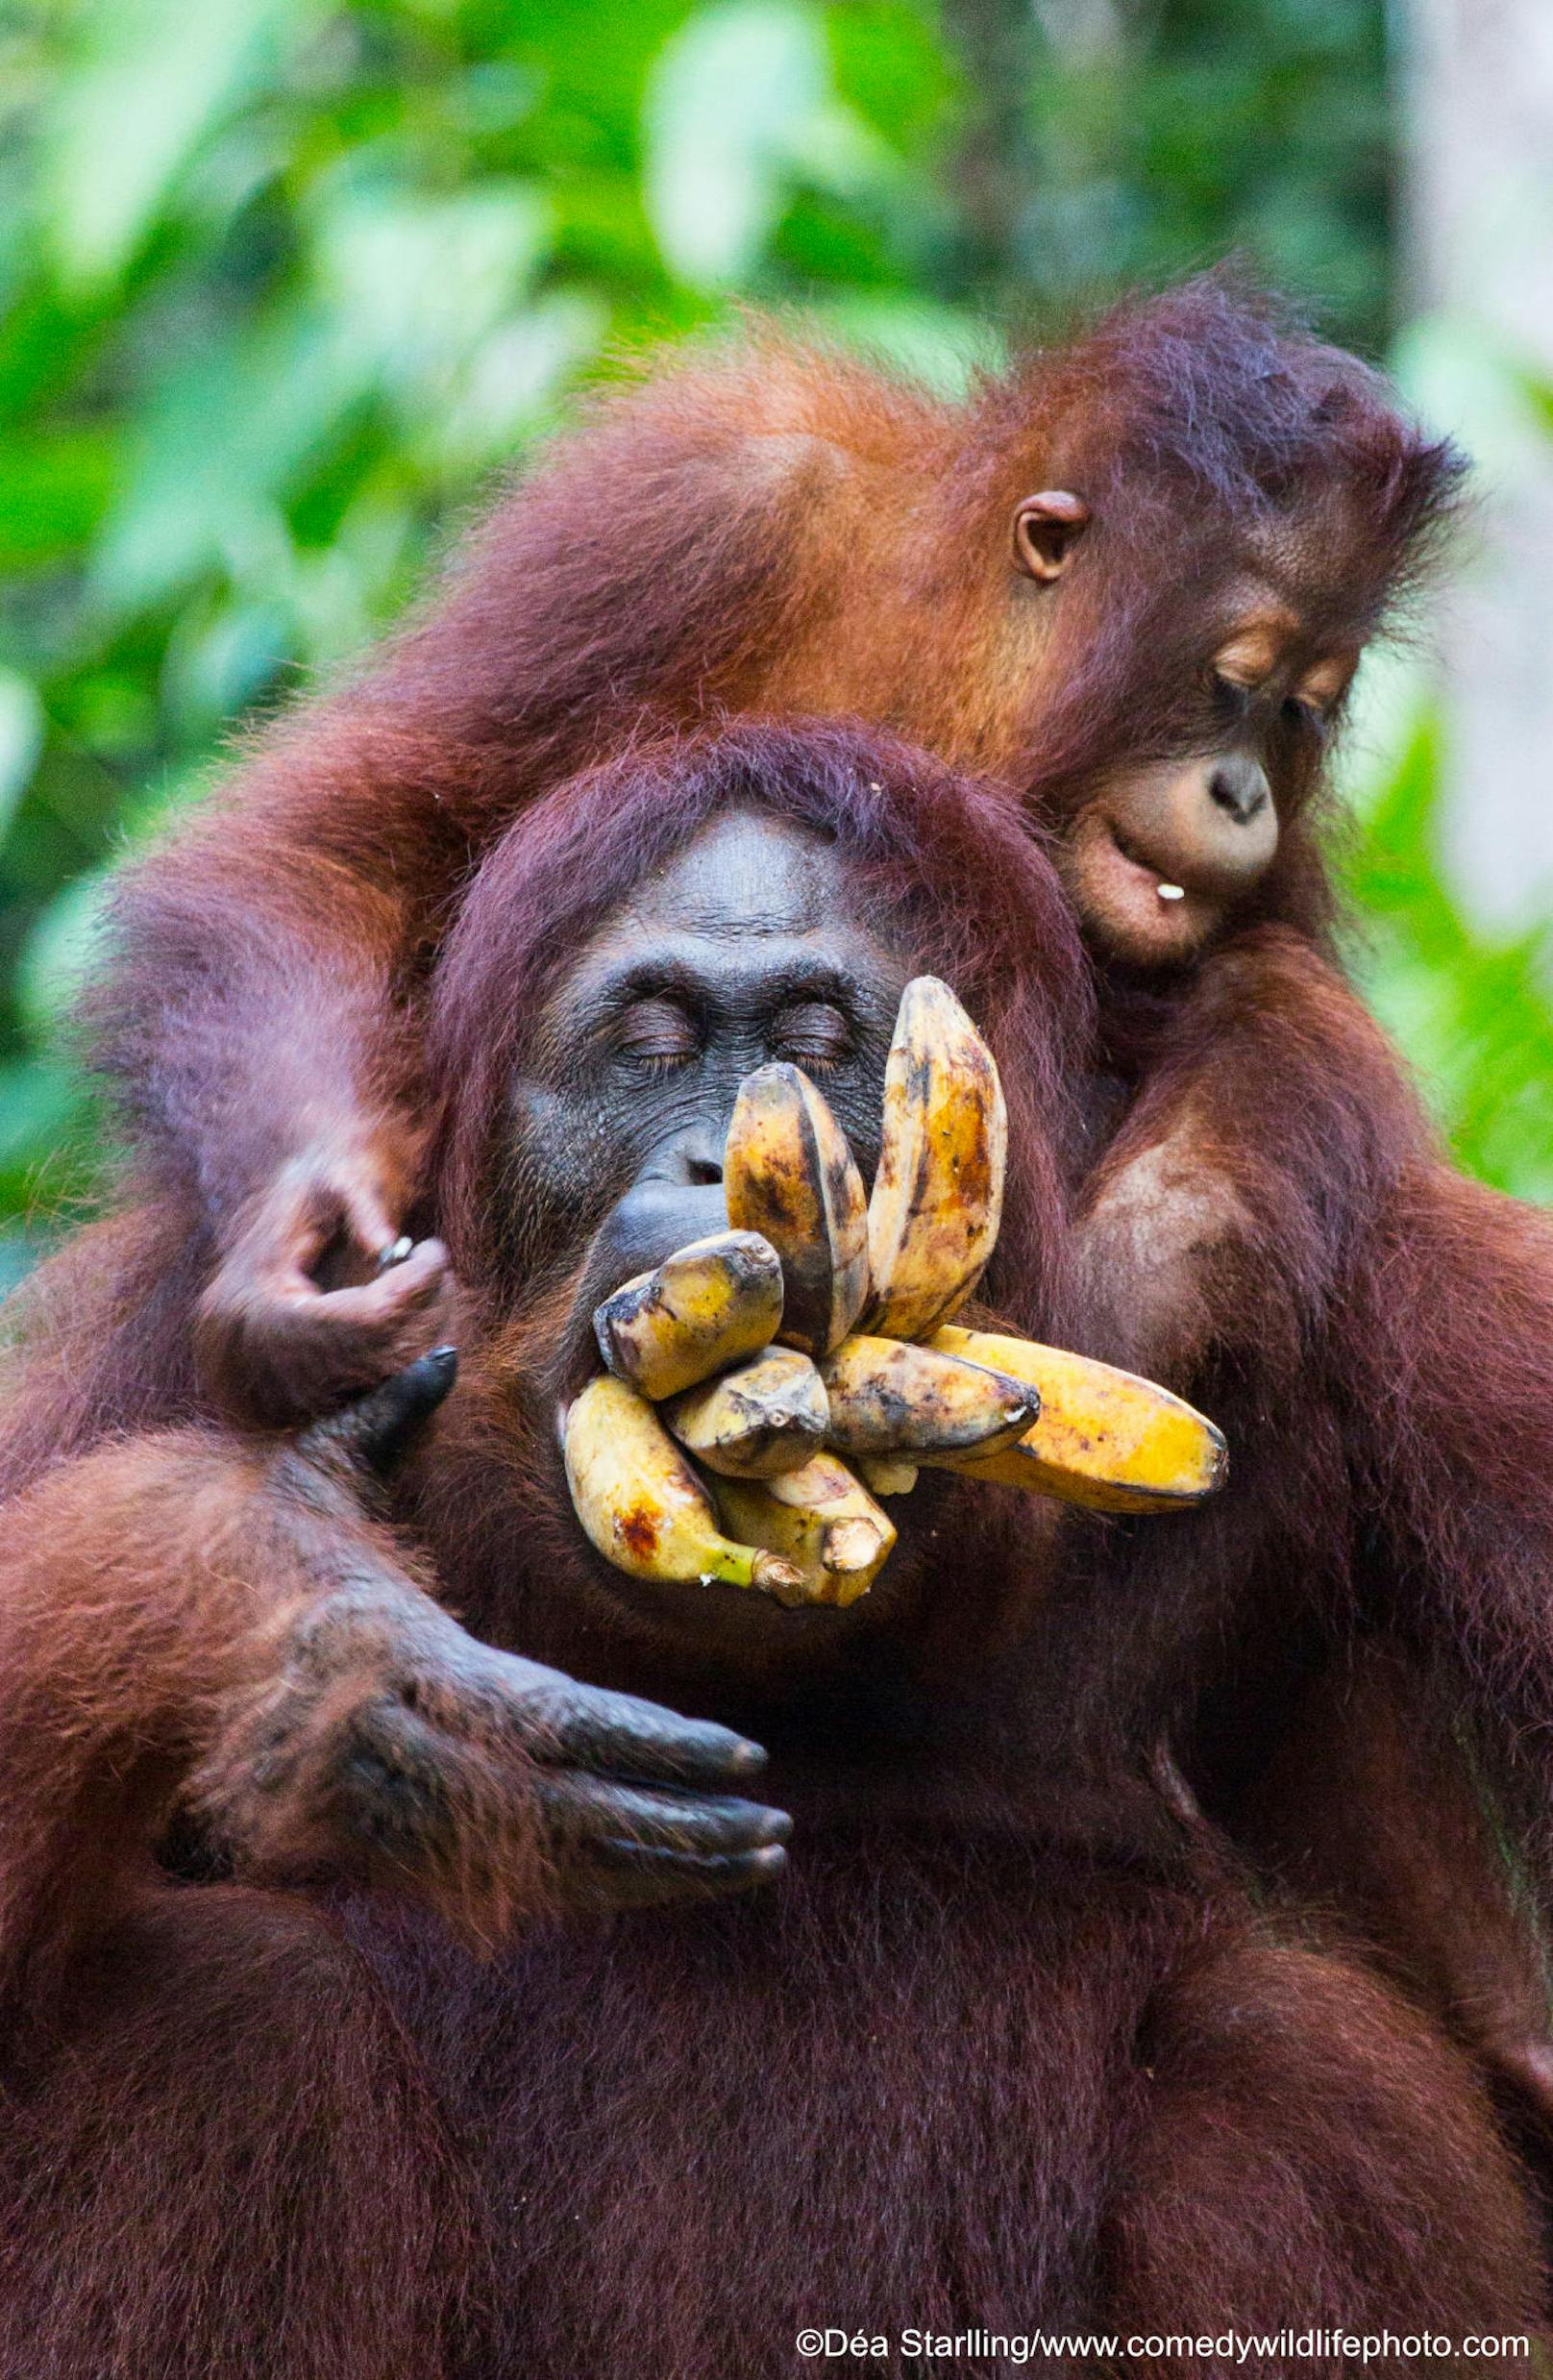 <b>Jungtier hilft Orang-Utan-Mama so viele Bananen wie möglich in den Mund zu stopfen</b>

"More bananas" von Dea Starlling
Ort: Indonesien